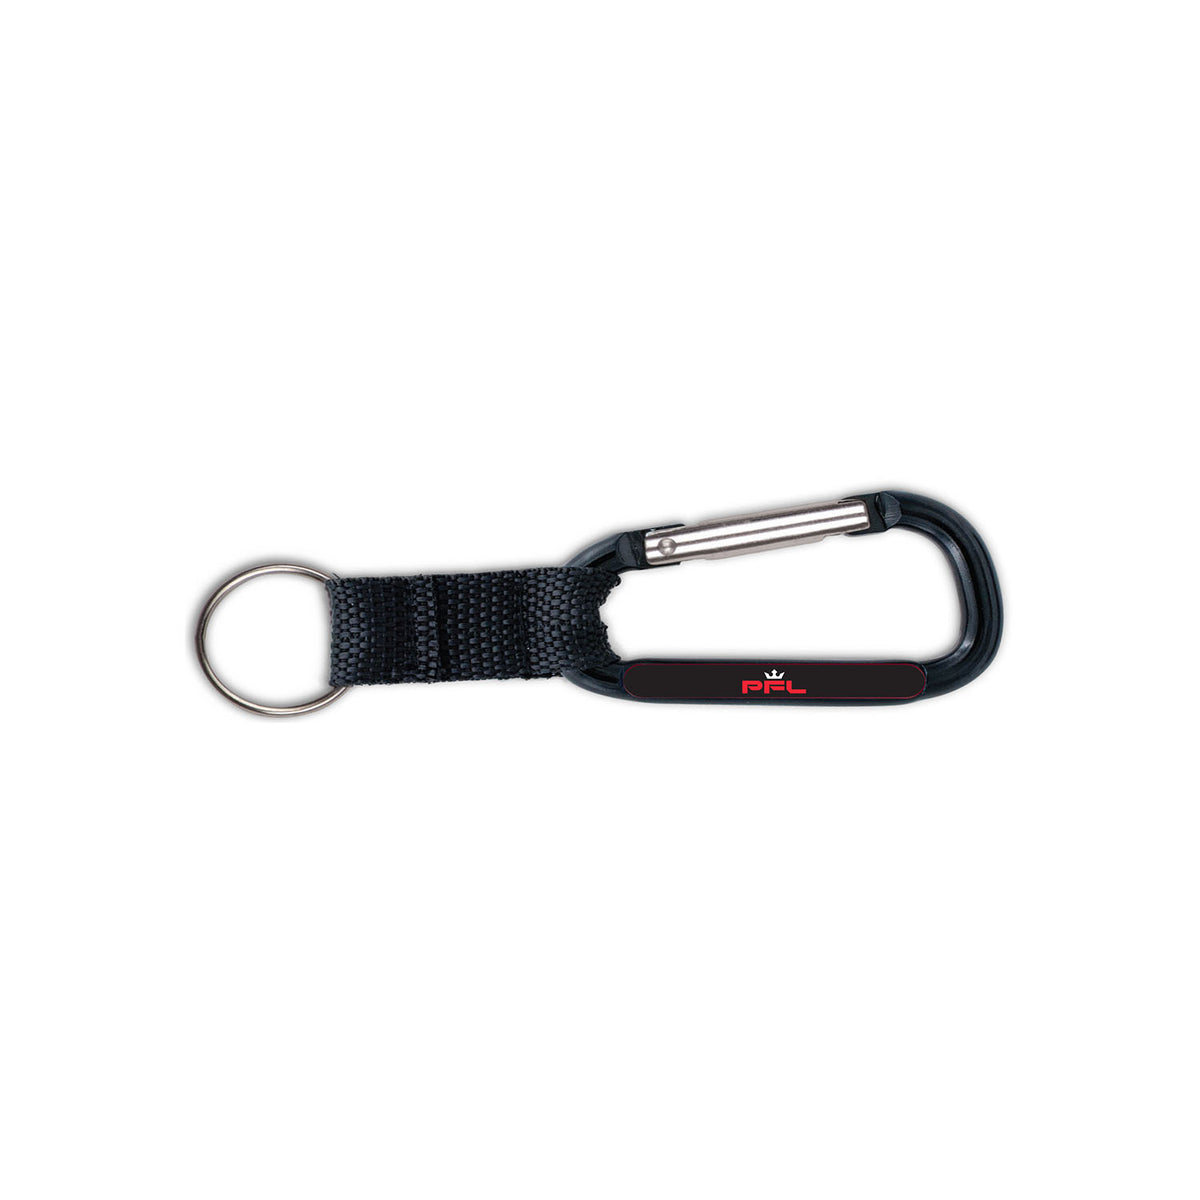 PFL Carabiner Key Ring in Black